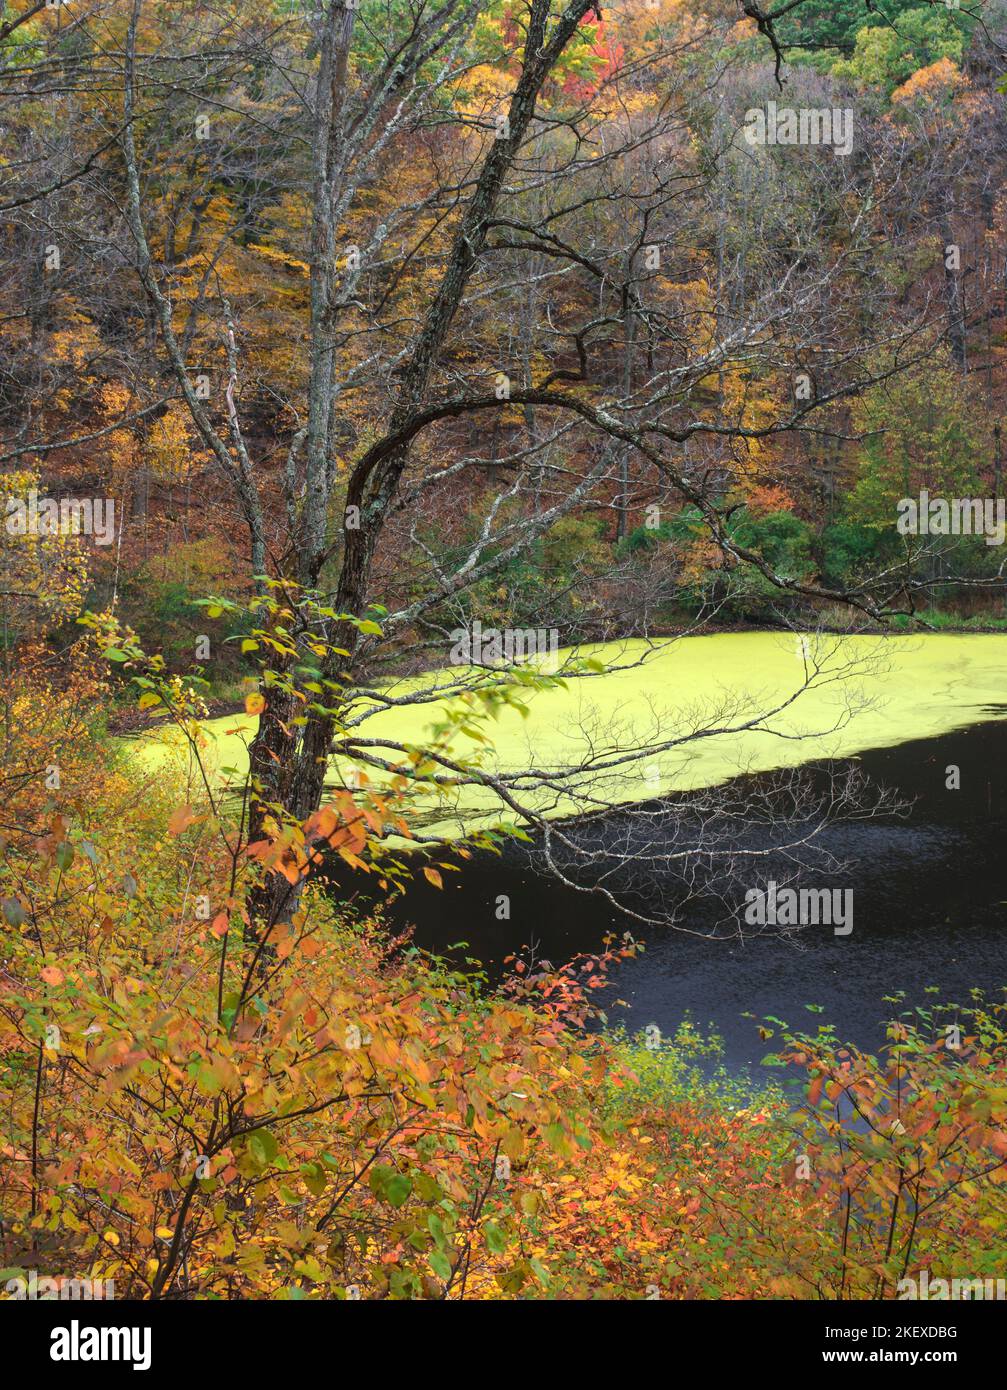 Greenbush Kettle ist ein Kettle Lake im Kettle Moraine State Forest, im Manitowoc County, Wisconsin, der hier im Herbst gezeigt wird. Stockfoto